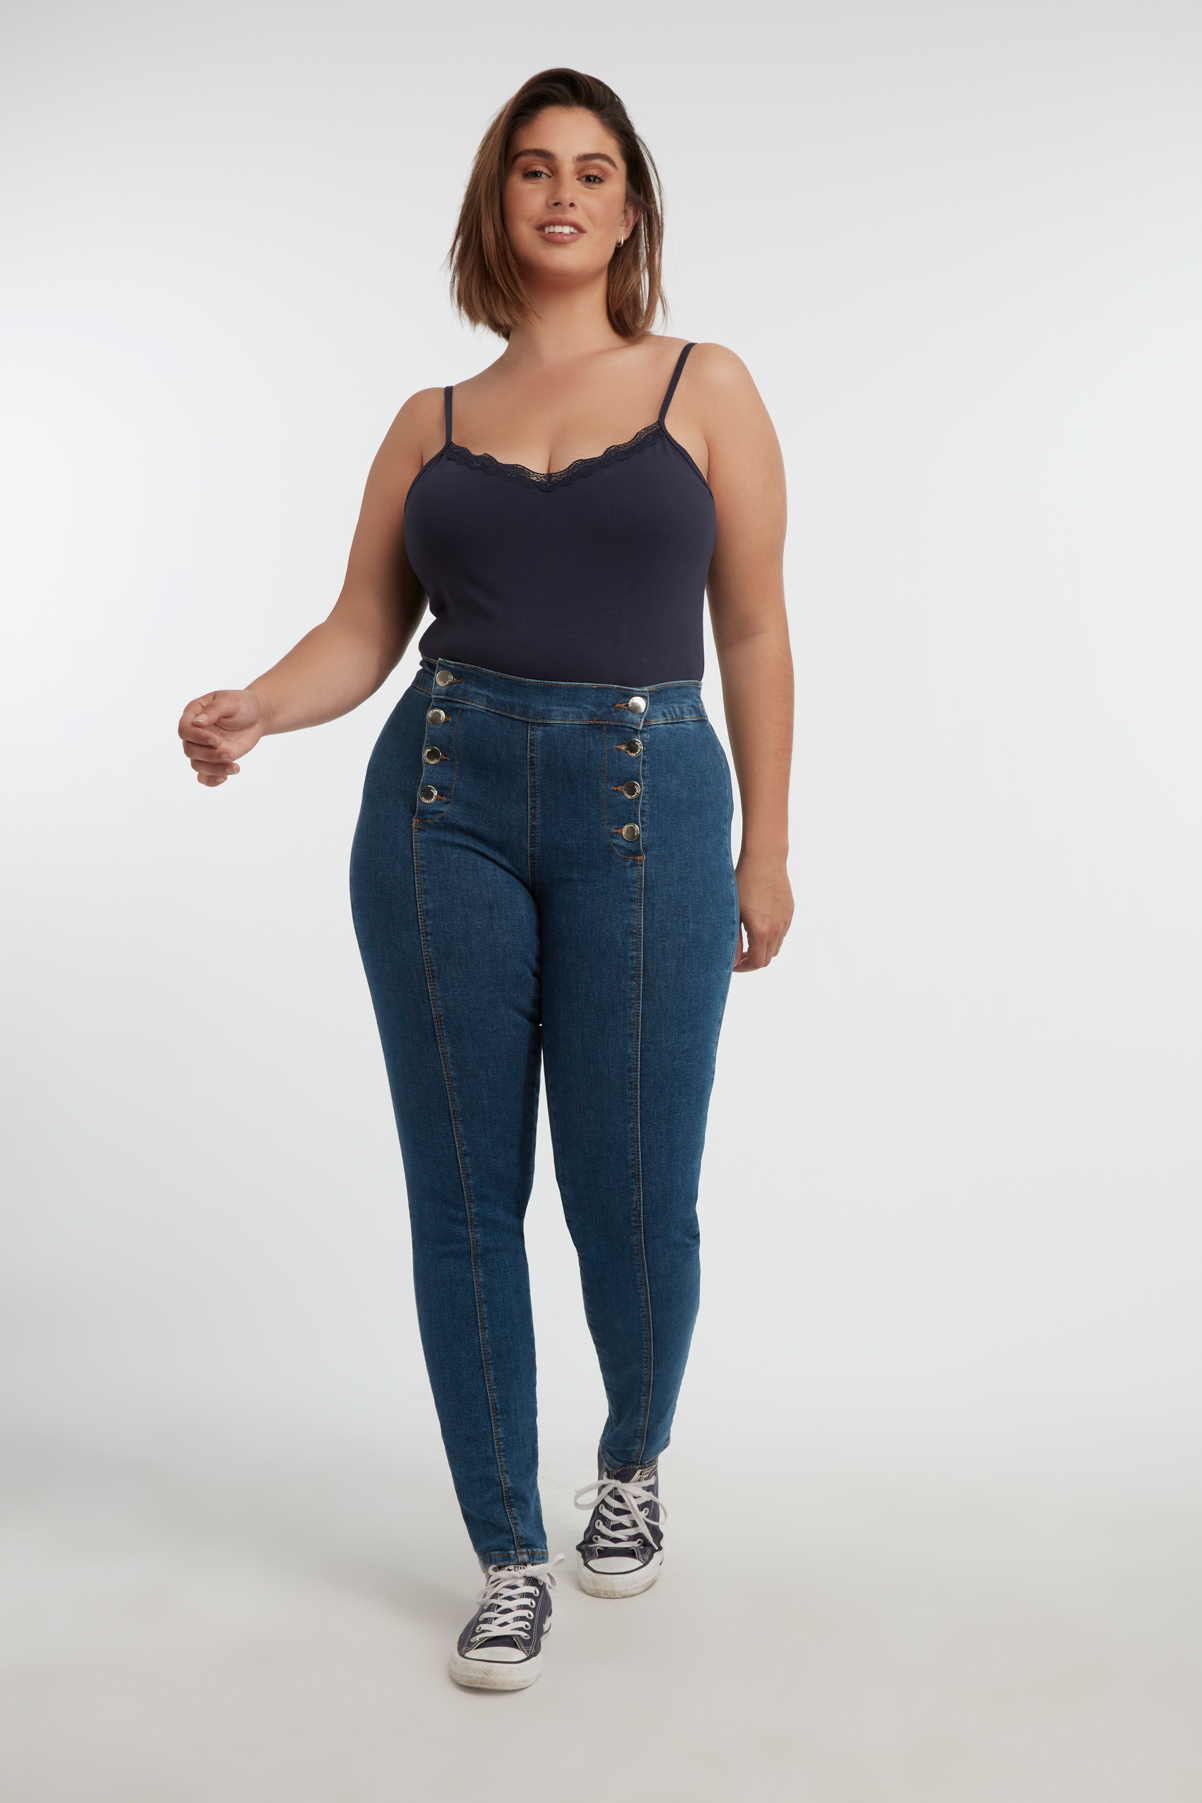 Damen Jeans in schmaler Passform mit Knöpfen | Official MS Mode® online  store